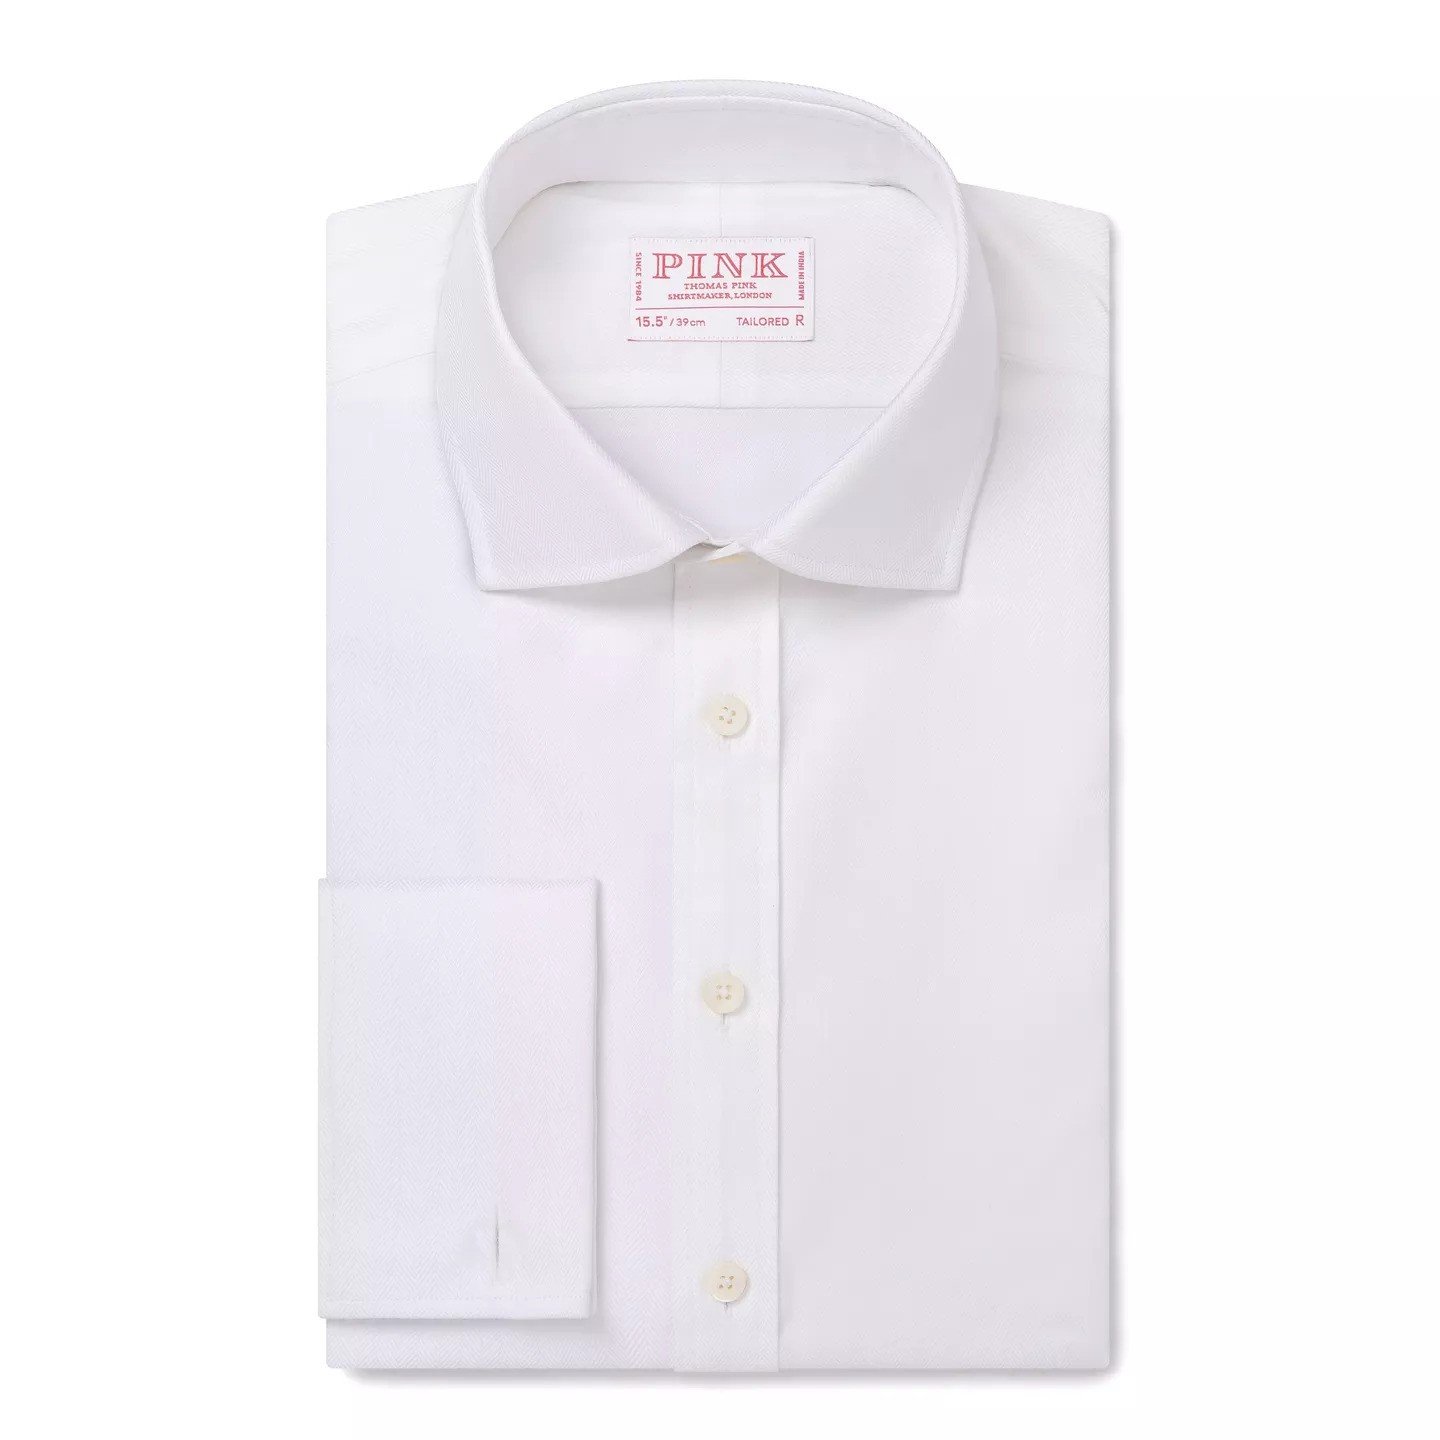 Thomas Pink white twill herringbone shirt - £125